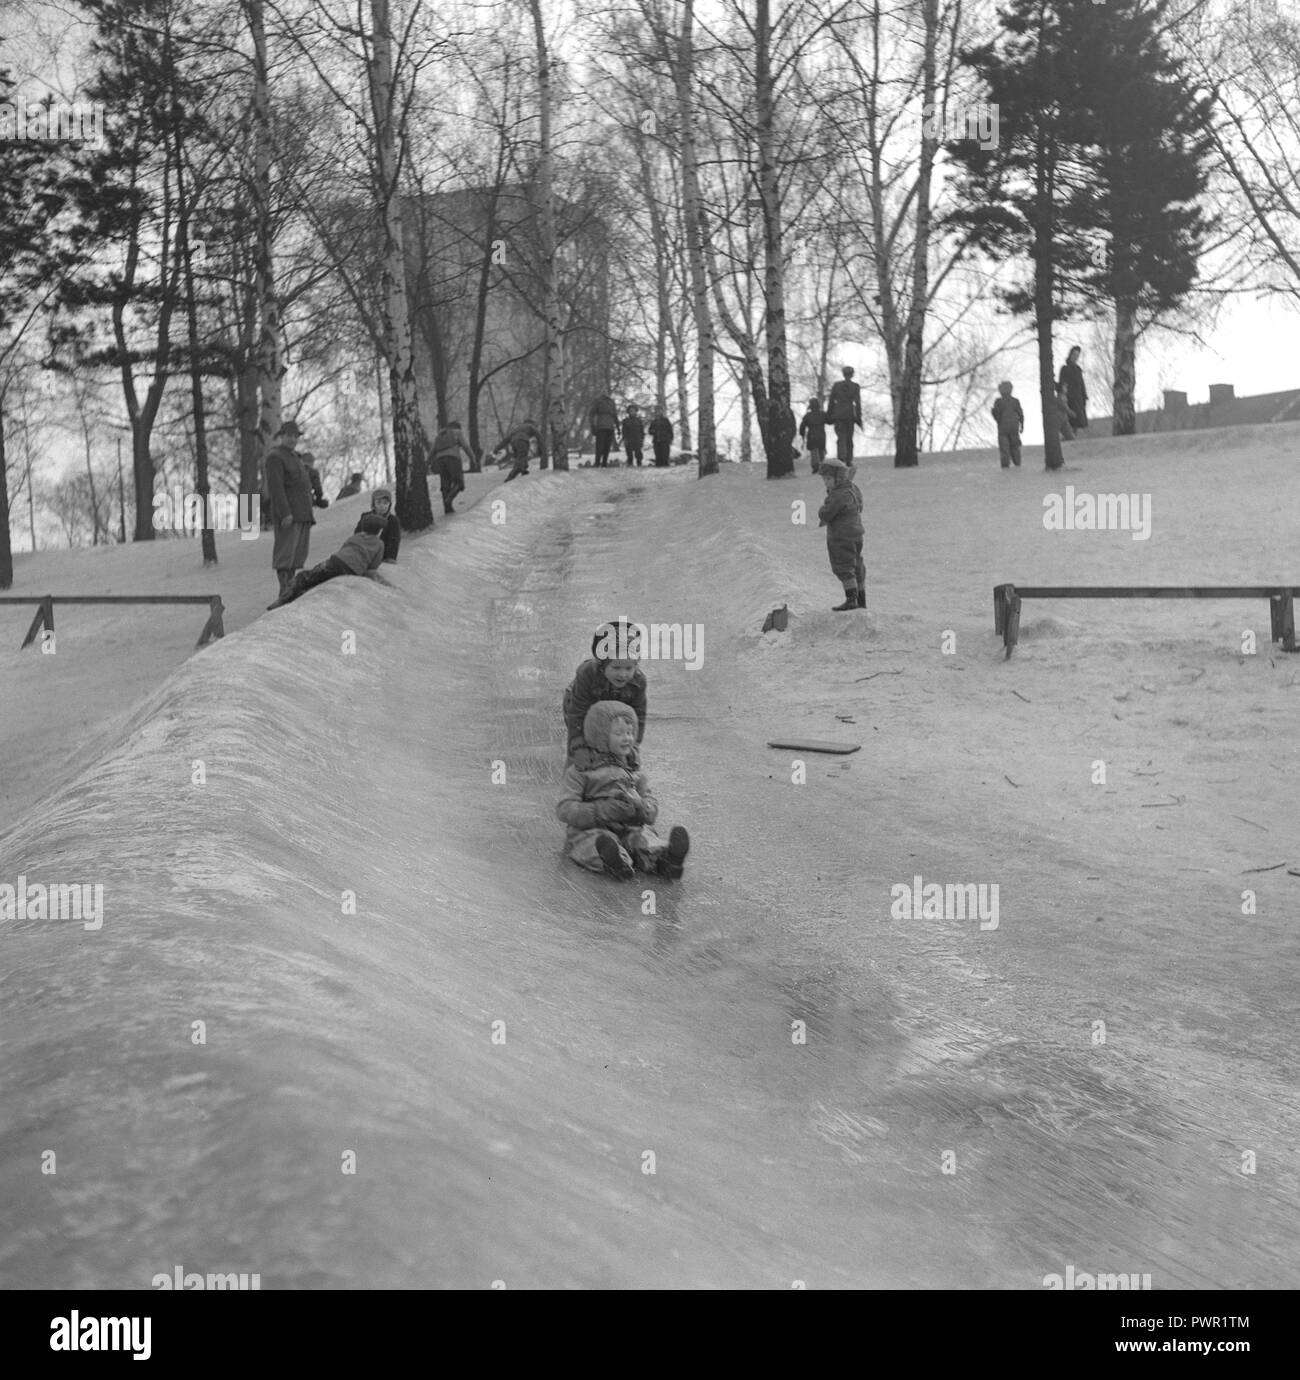 L'hiver dans les années 1950. Des enfants jouent dans un parc à Stockholm. Le glisser sur la colline glacée ensemble et avoir du plaisir. Suède 1951. Ref 1609 Banque D'Images